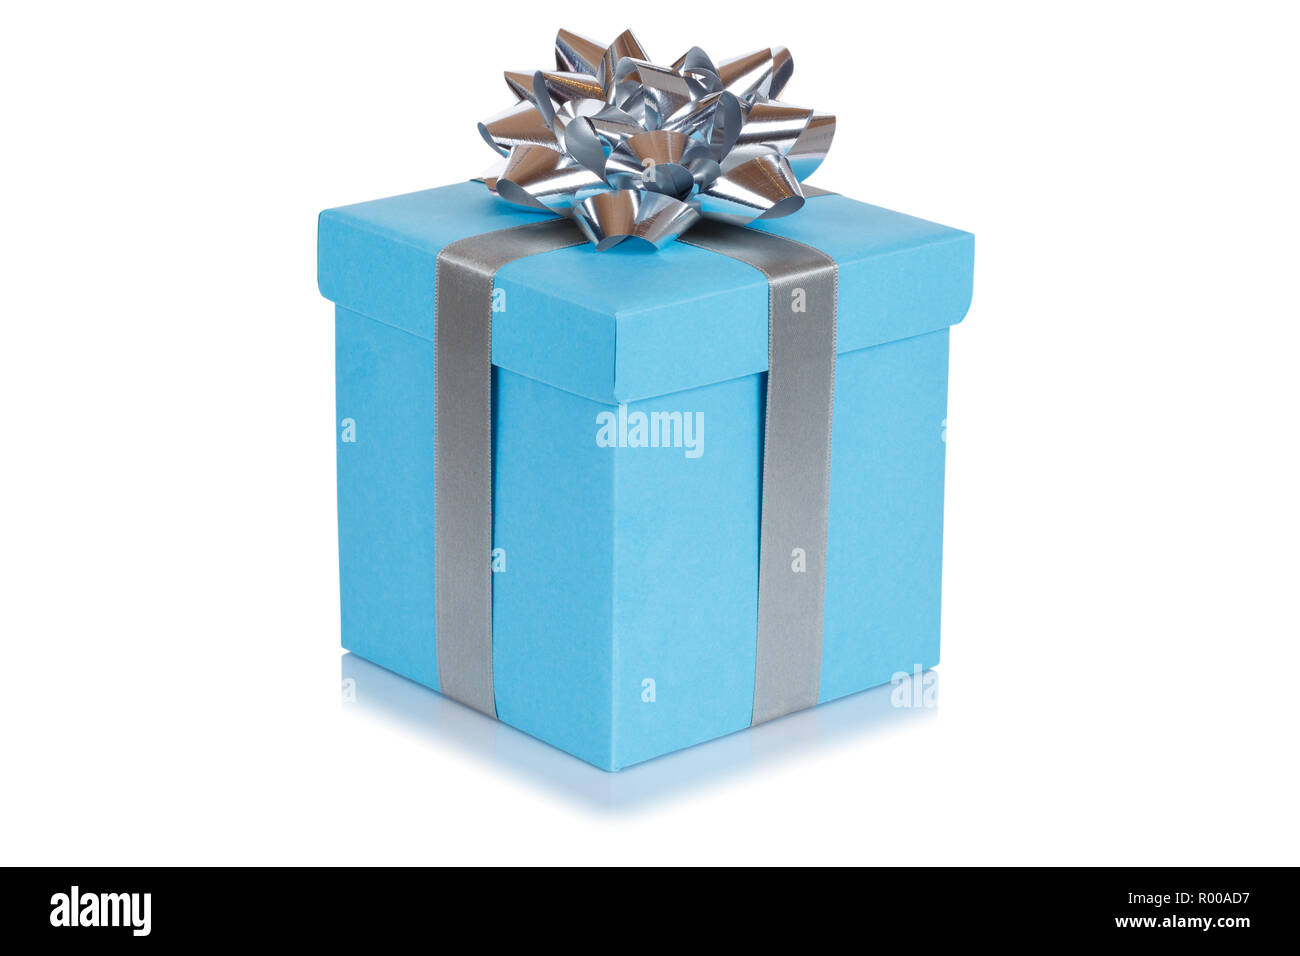 Cadeau anniversaire cadeau de noël blue box isolé sur fond blanc Banque D'Images